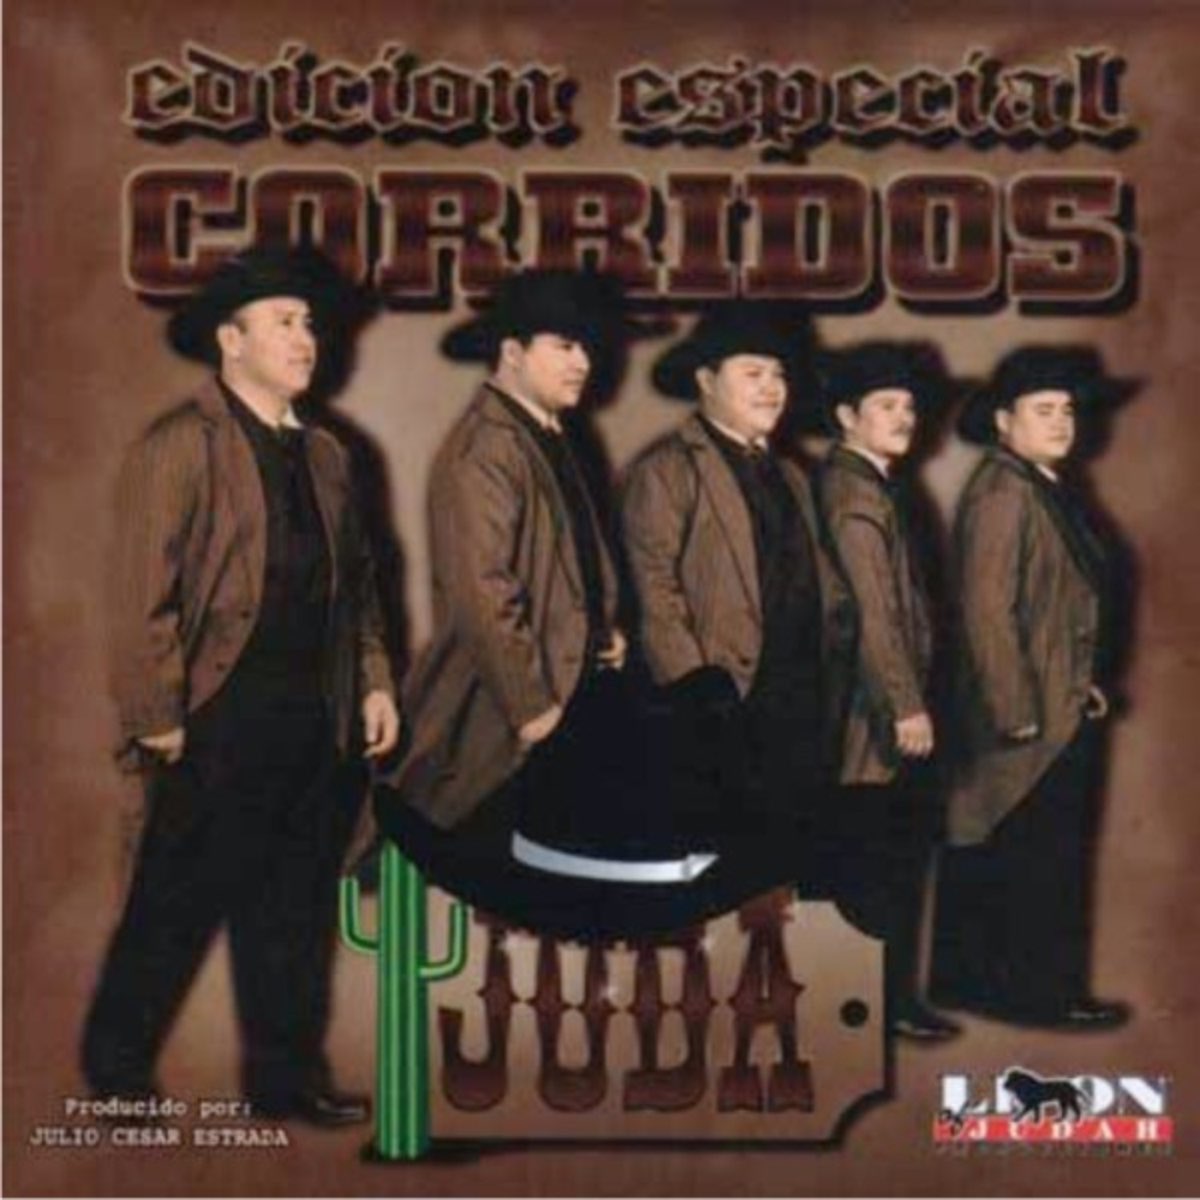 Edicion Especial Corridos, vol. 1 by Juda on Apple Music